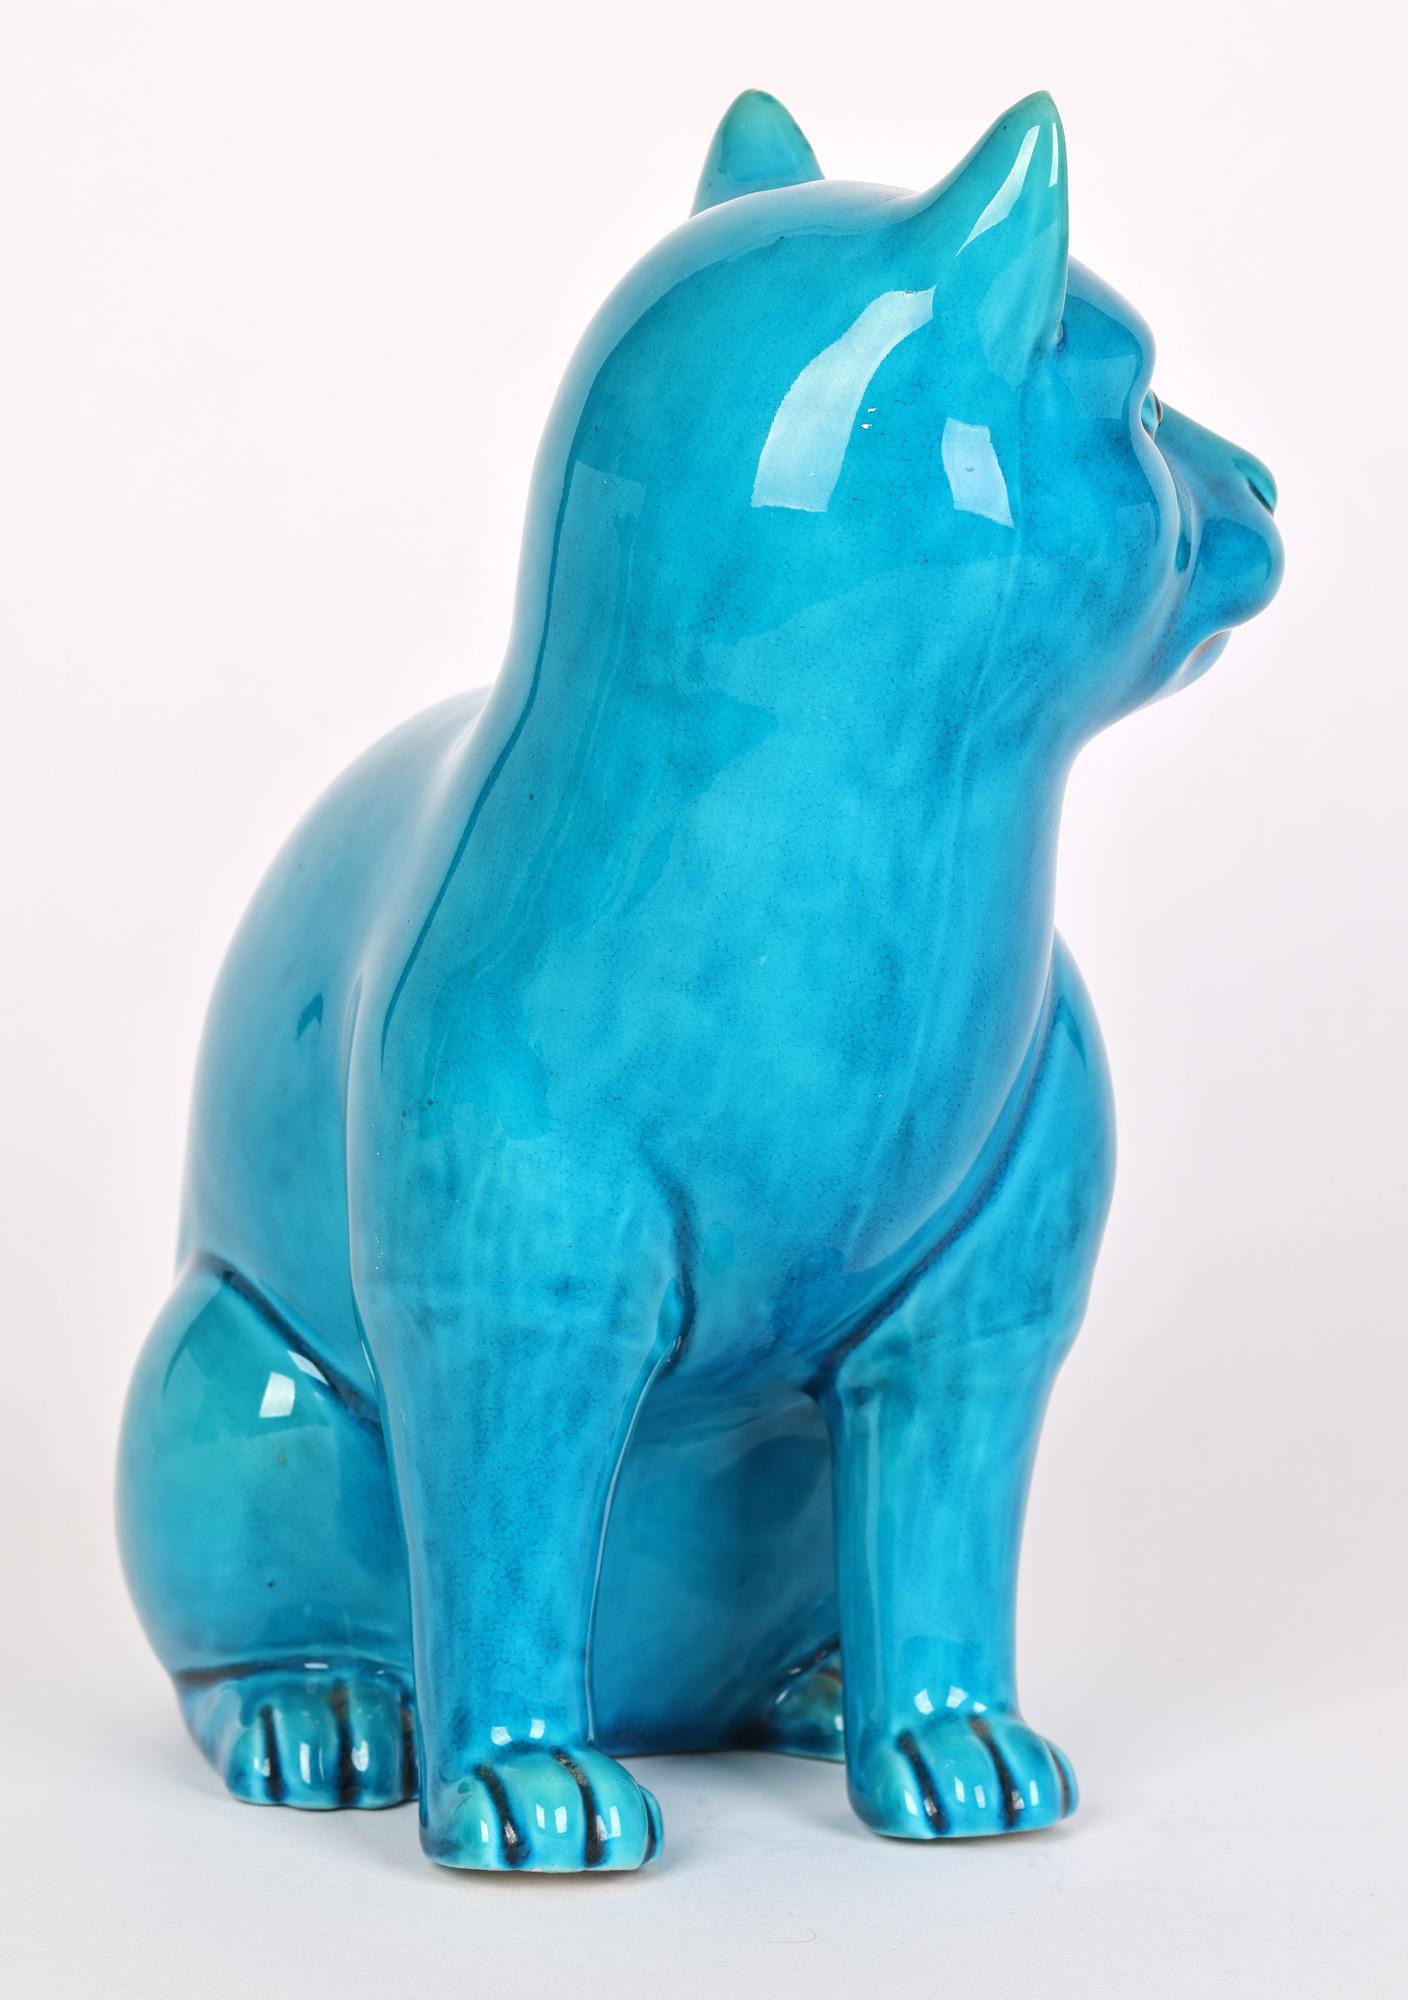 Chinese Turquoise Glazed Porcelain Seated Cat Figure    6